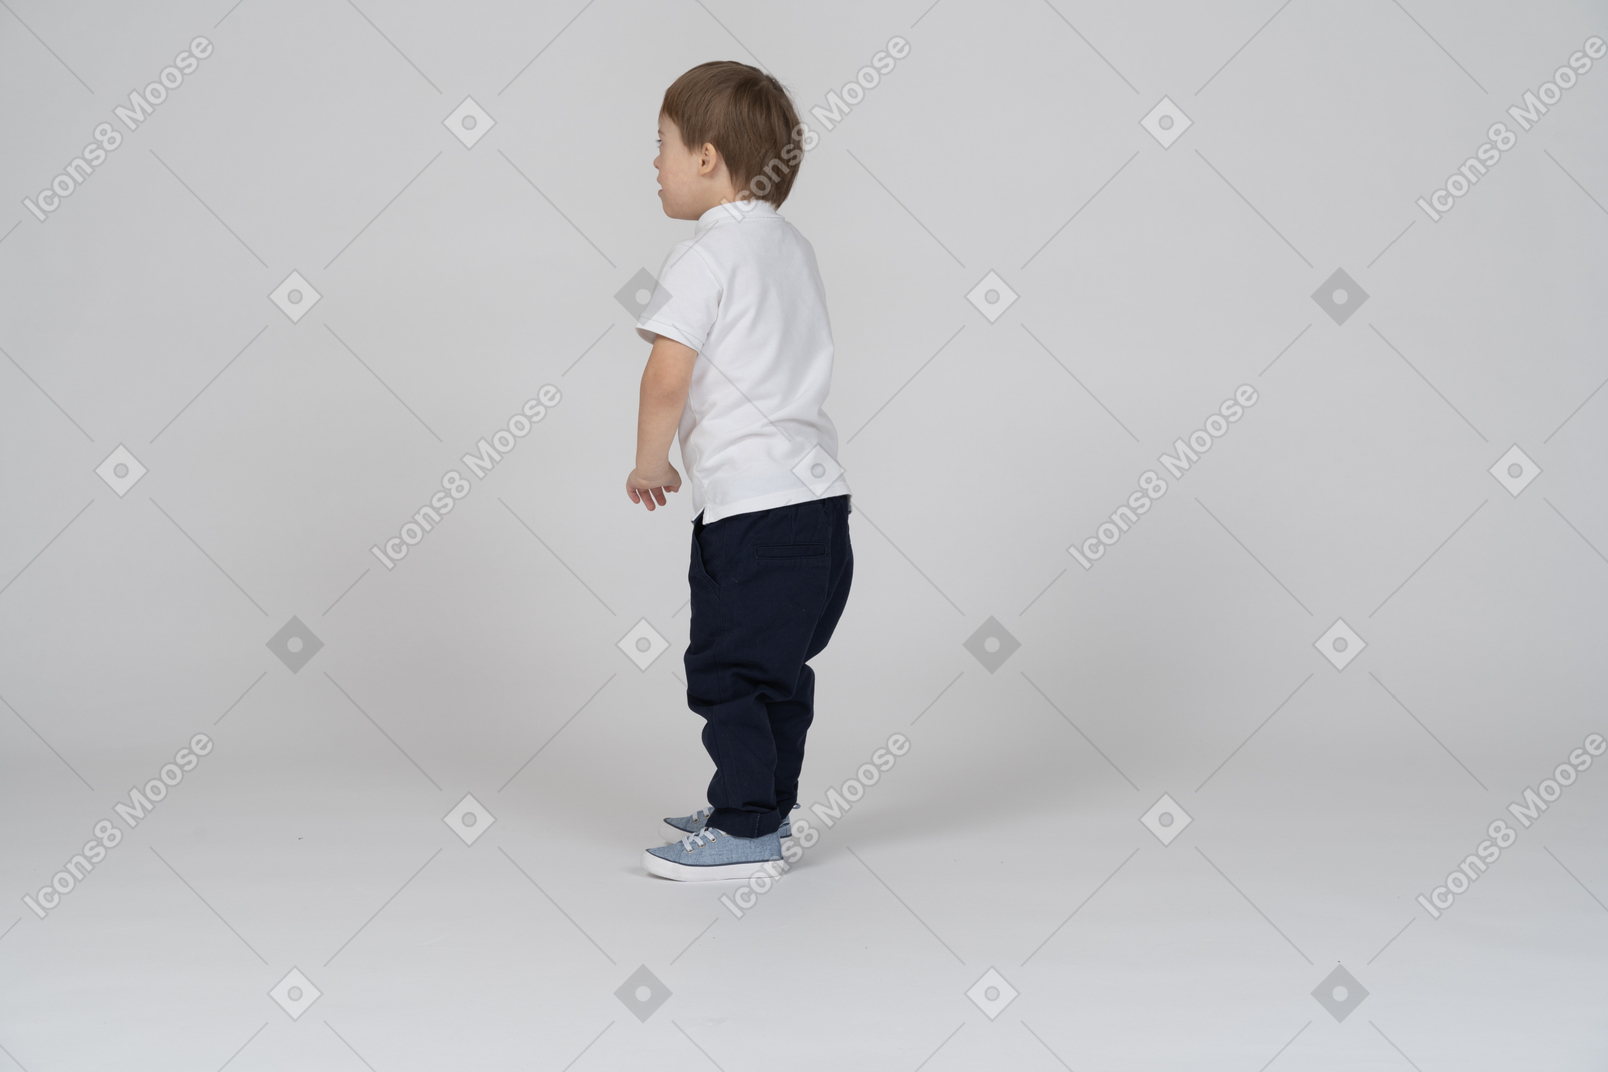 Vista traseira do menino em pé com os braços ao lado